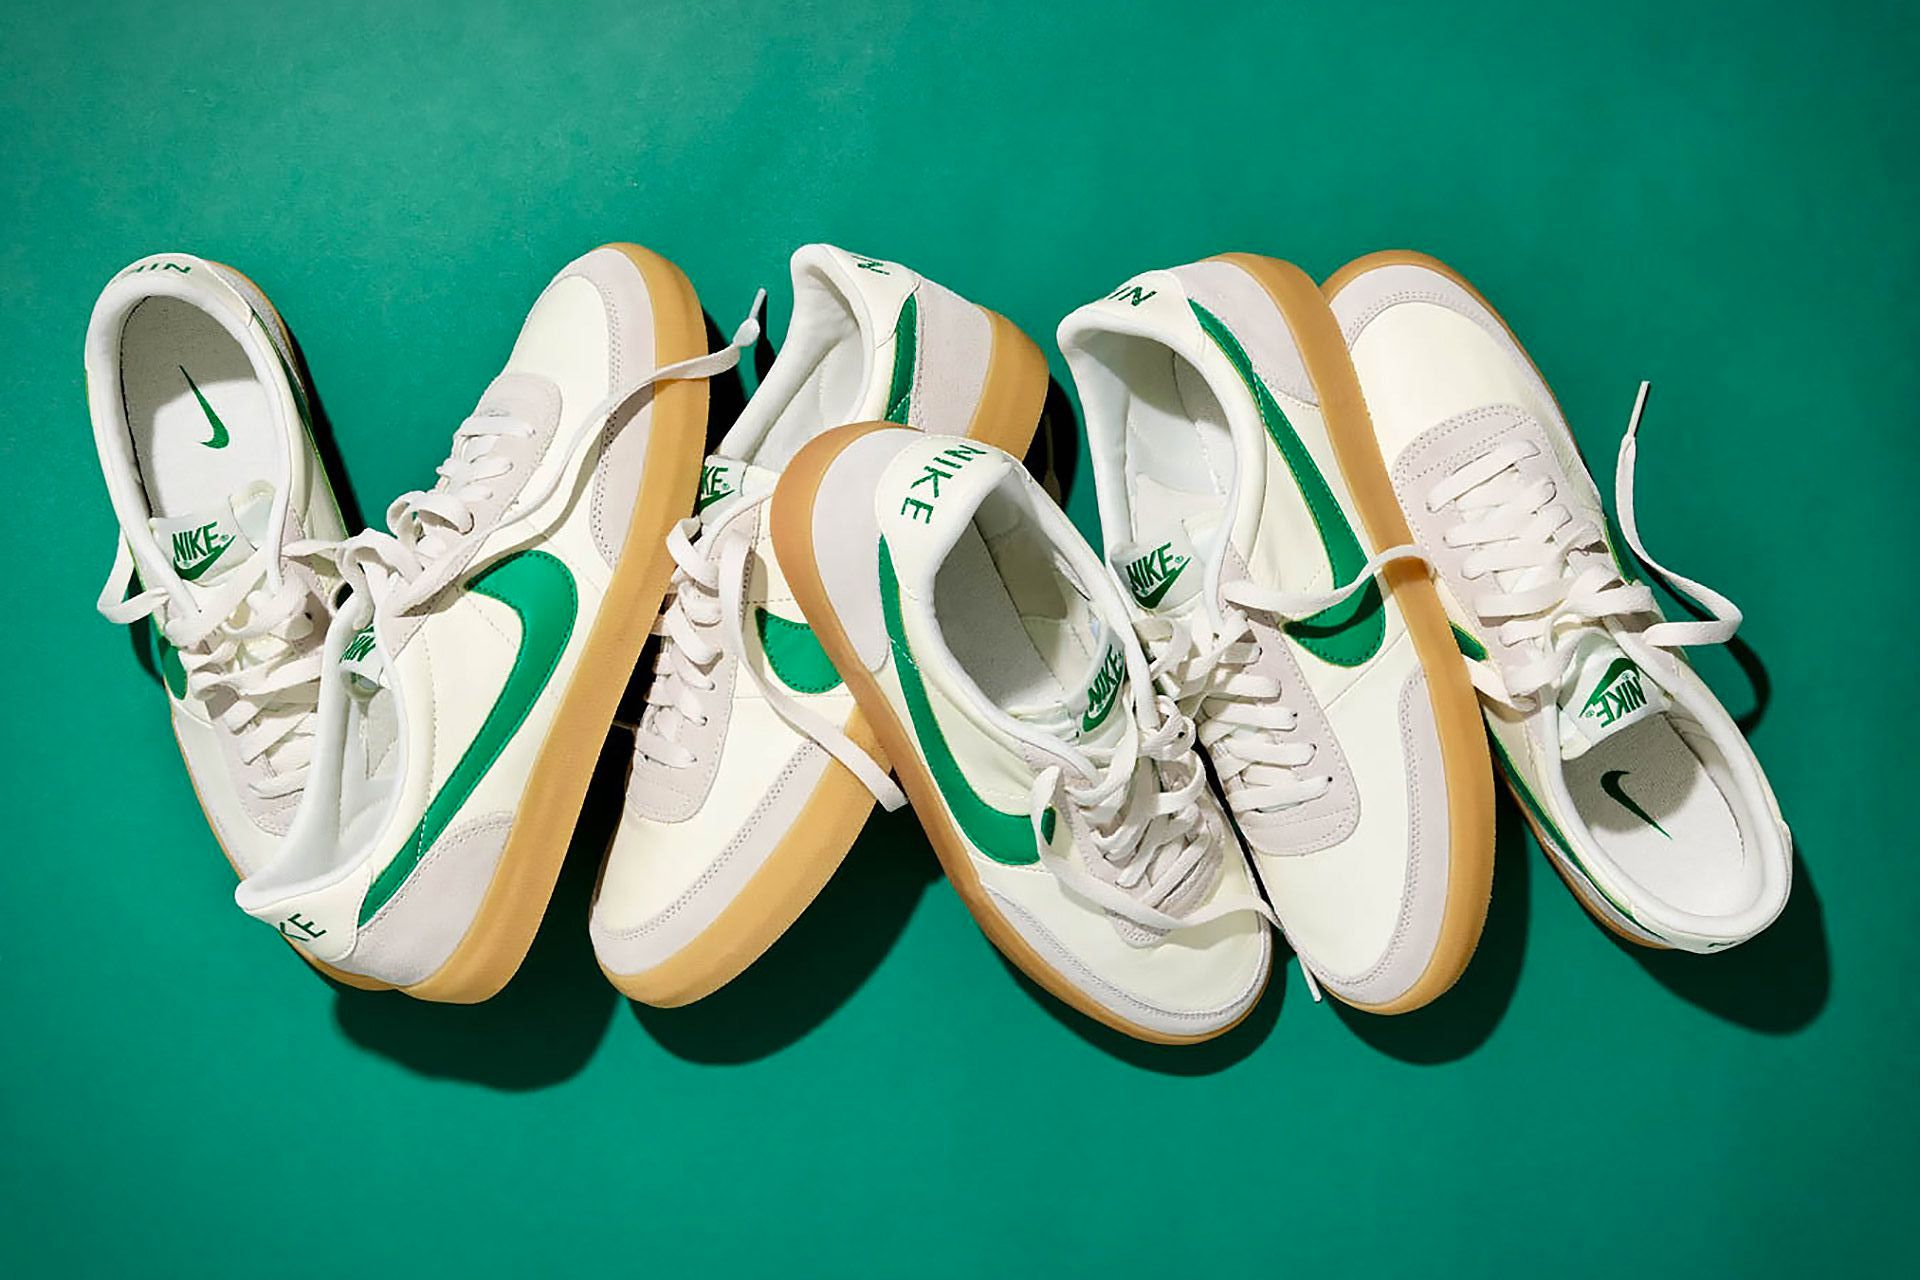 Así las nuevas zapatillas deportivas Killshot de Nike y J. Crew... ¡en verde!